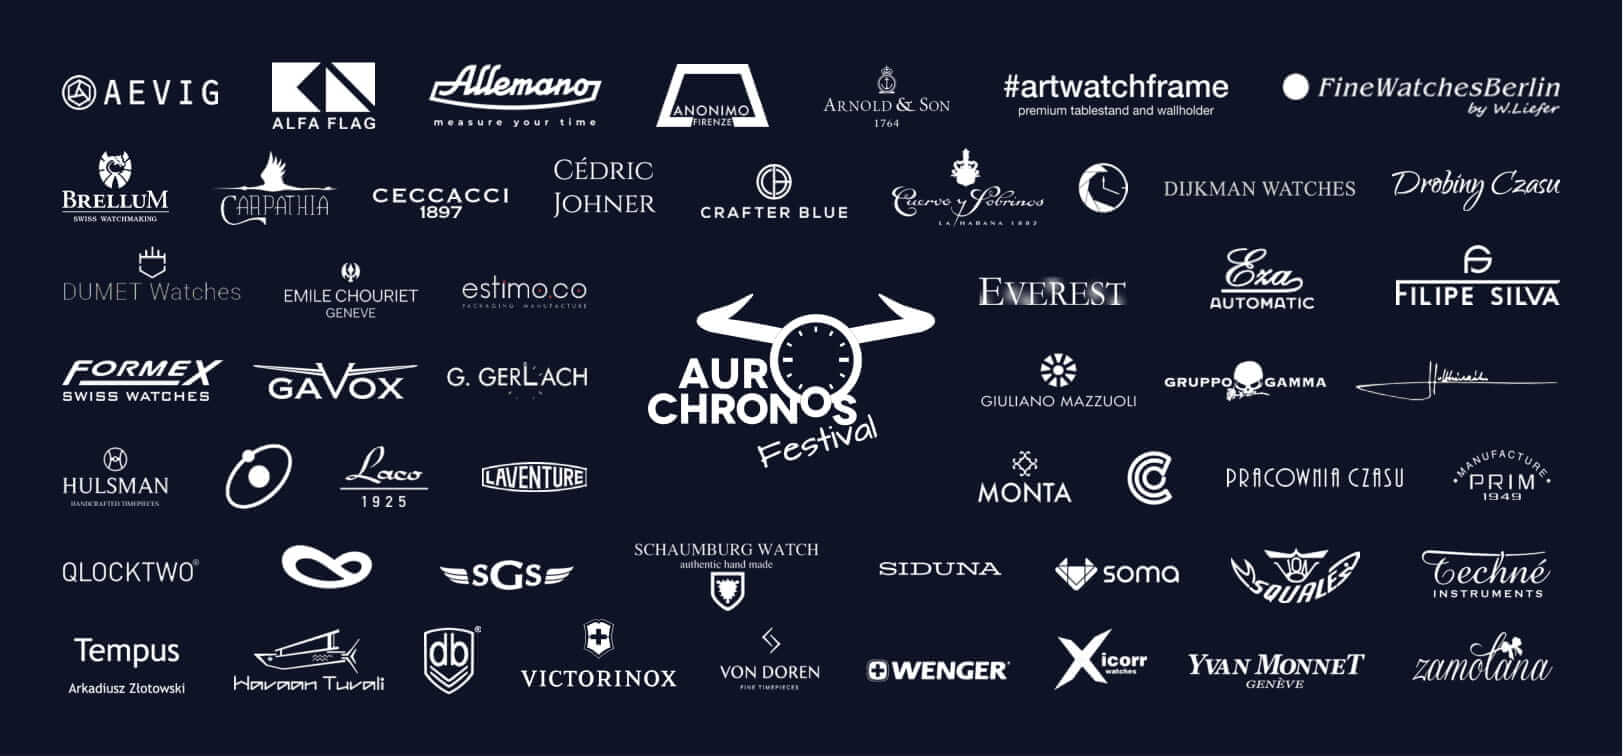 AuroChronos Festival 2019 – zapowiedź oraz informacje o 3. edycji!